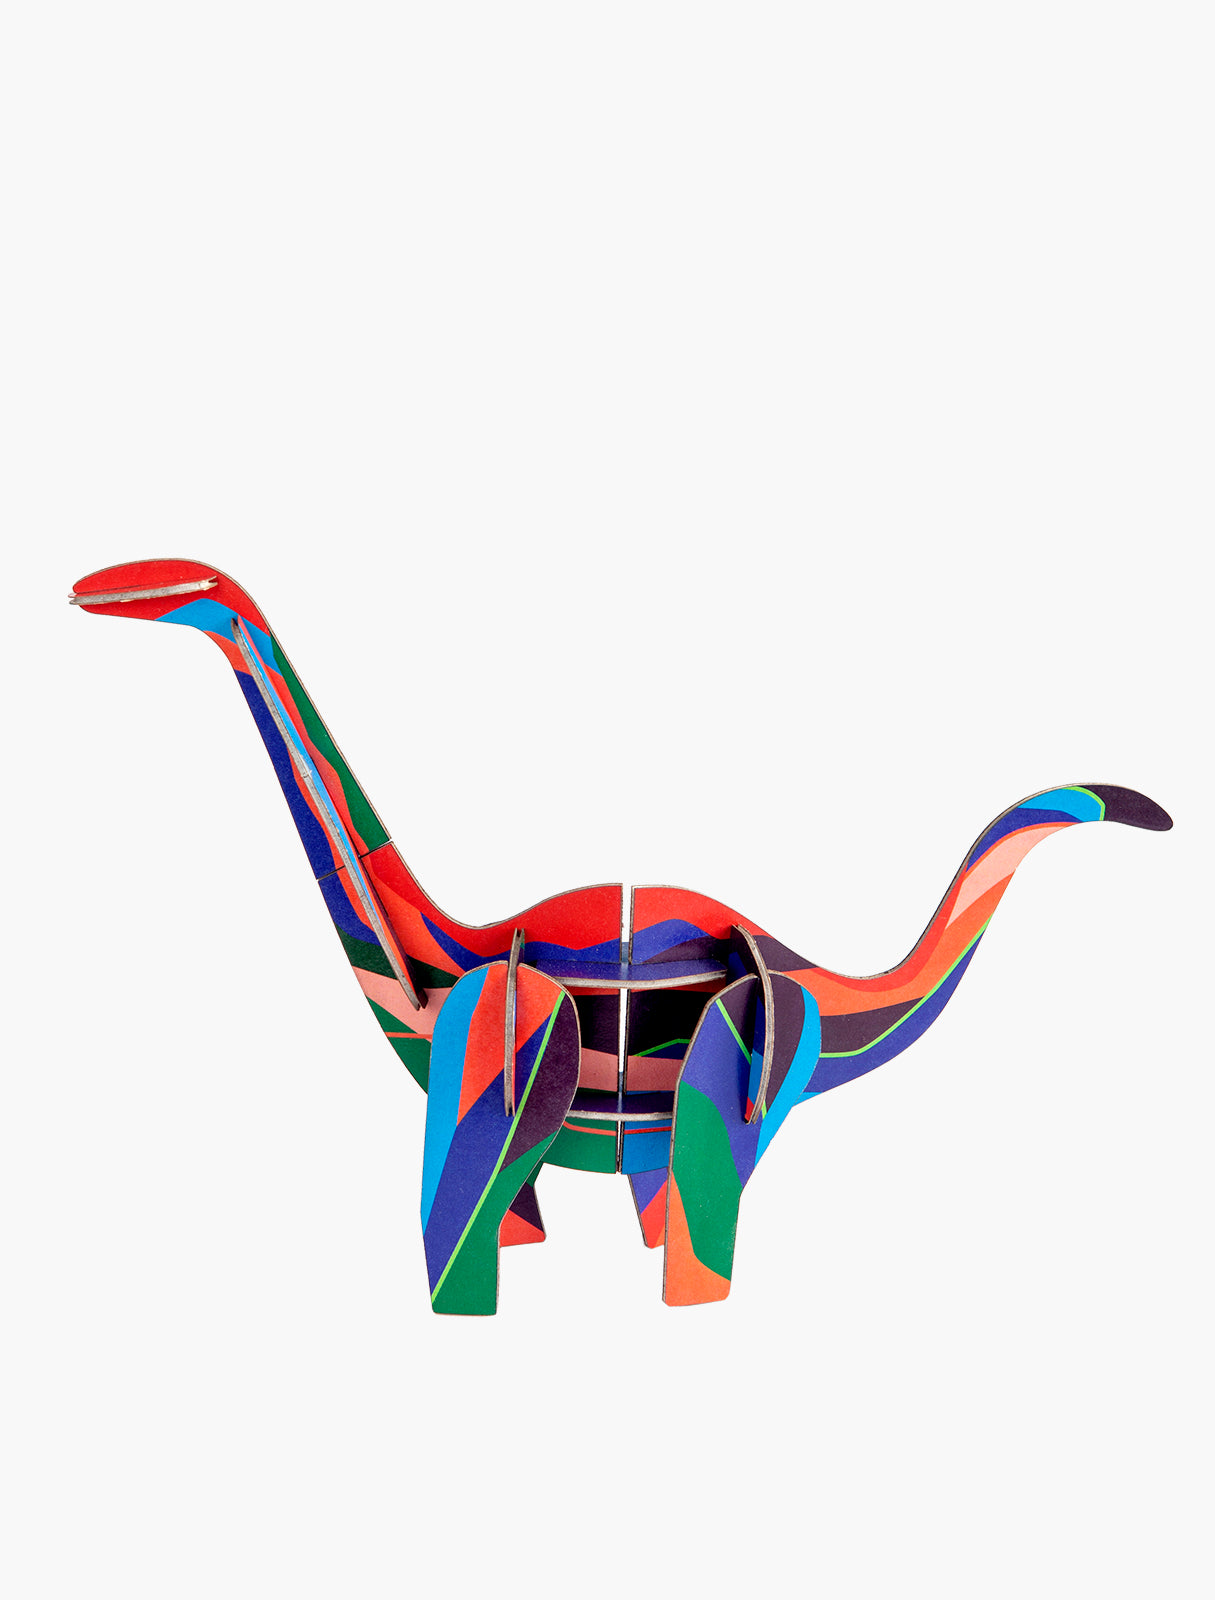 Dinosaure diplodocus - jouet en carton recyclé pour enfant - studio roof